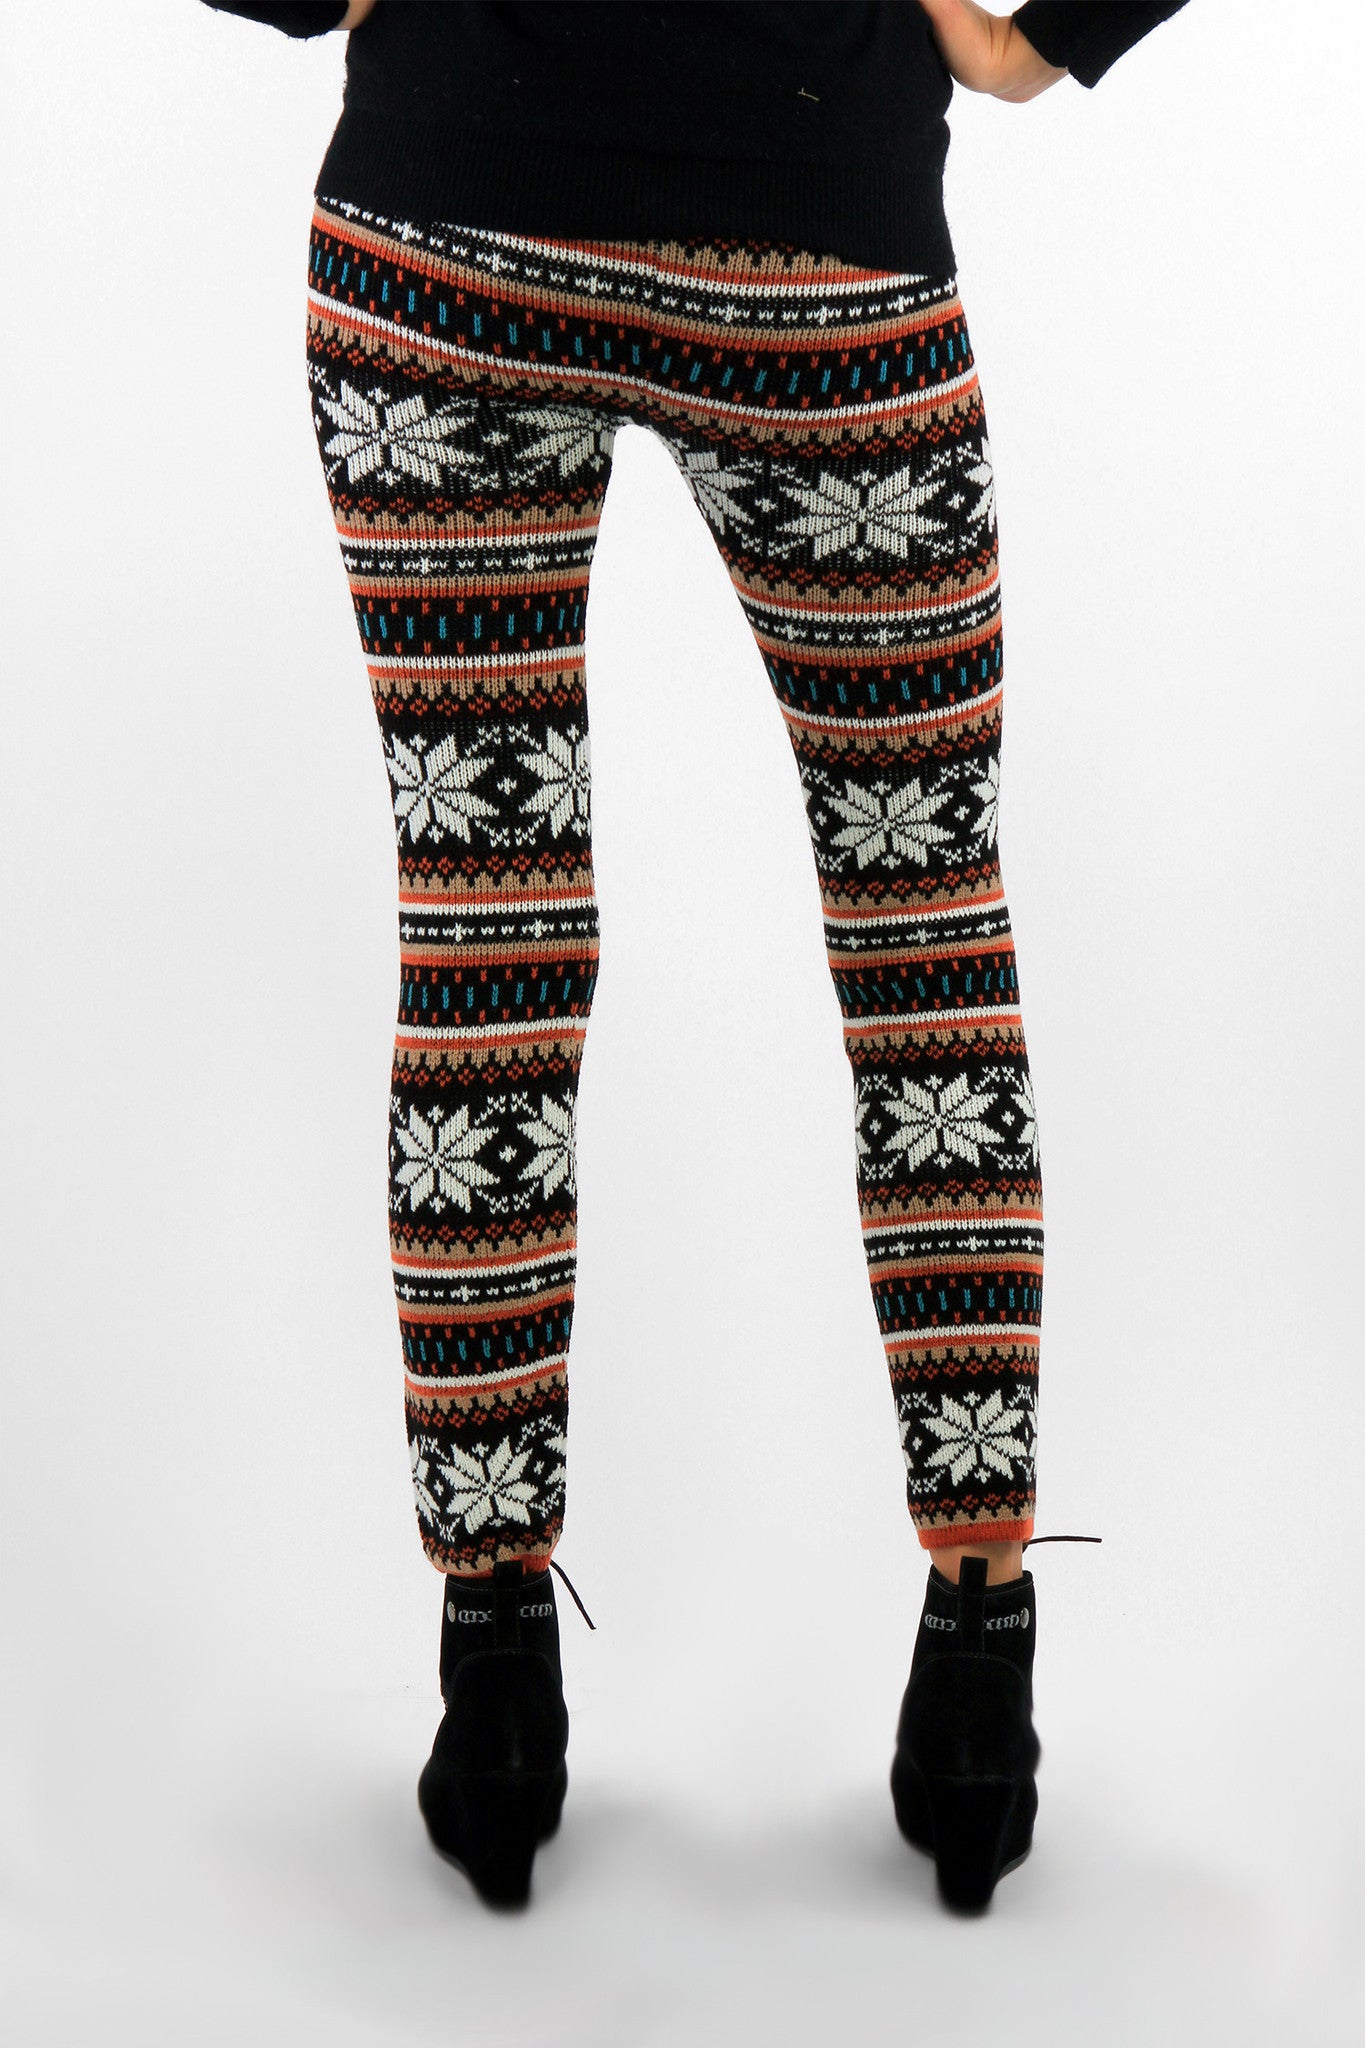 Wonderful Winter Knitted Leggings